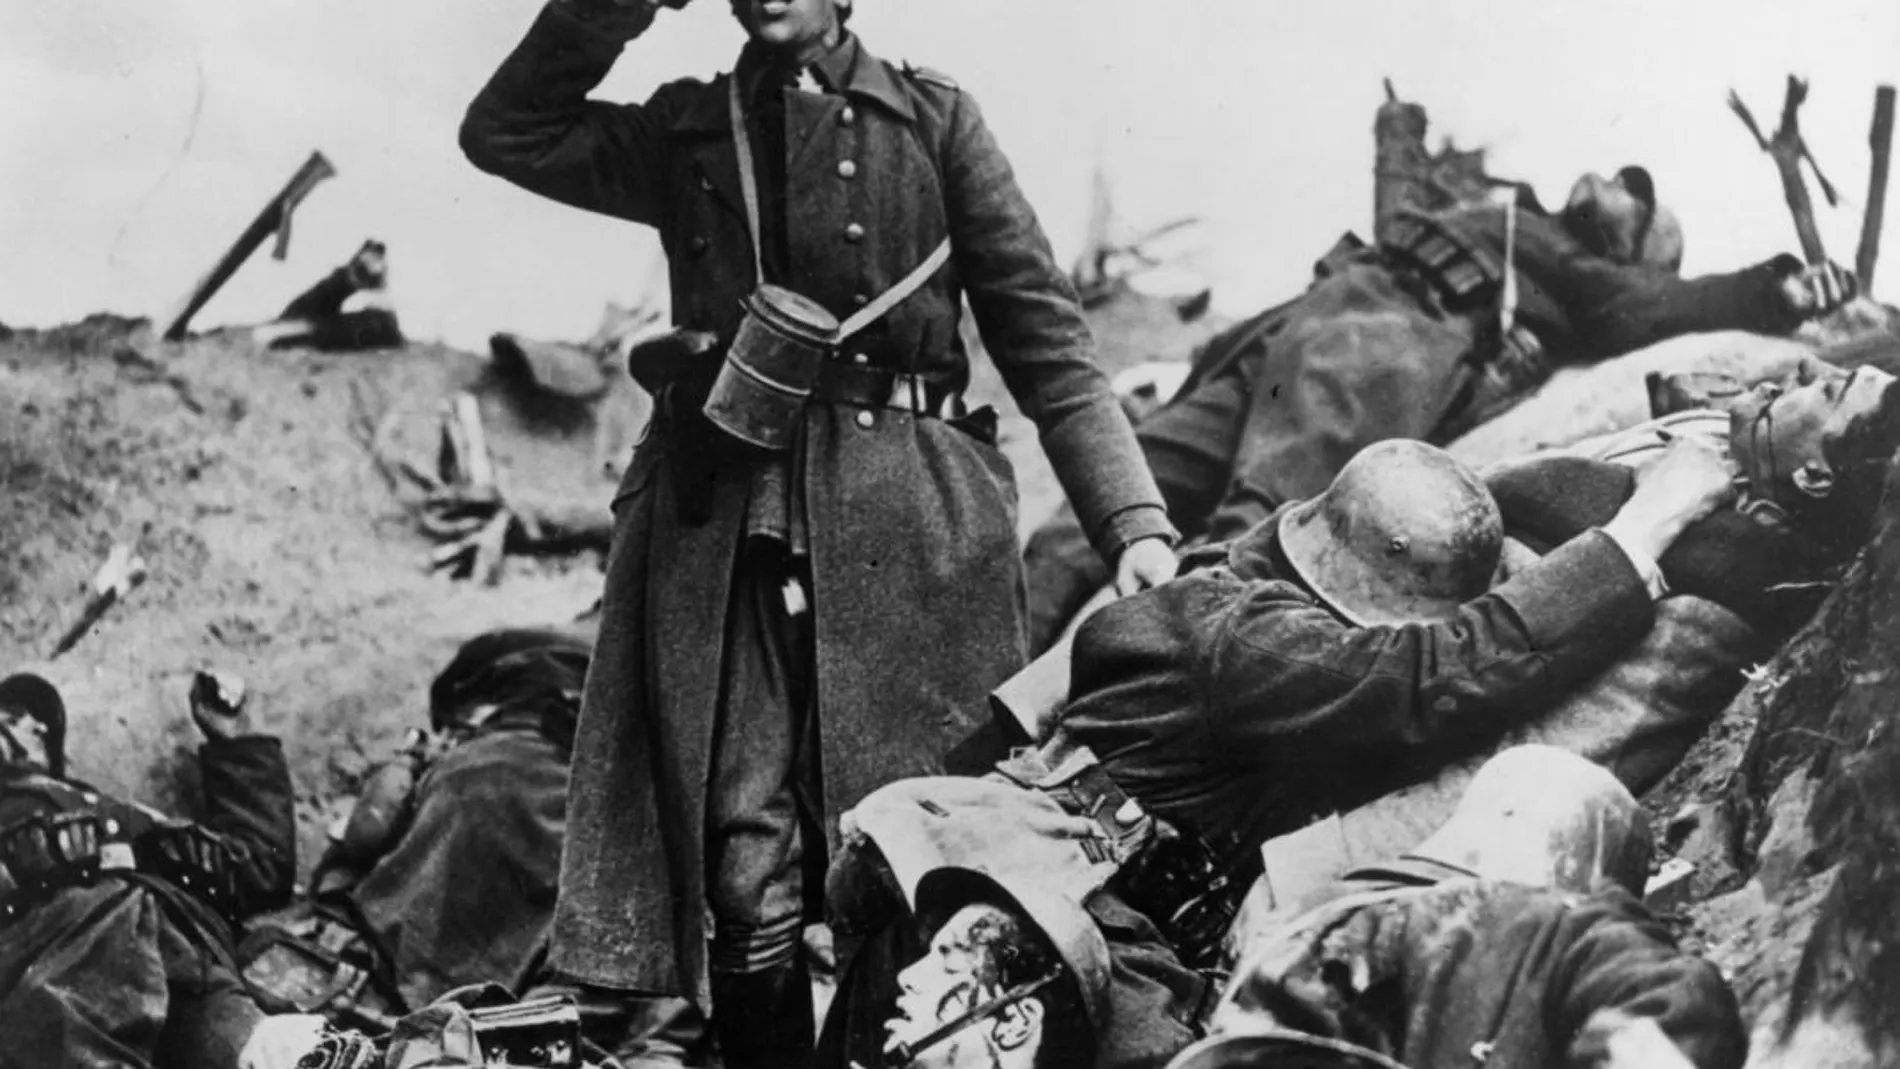 «Westfront 1918», conocida en España como «Cuatro de Infantería», de G. W. Pabst, trató la guerra desde la perspectiva de los soldados rasos